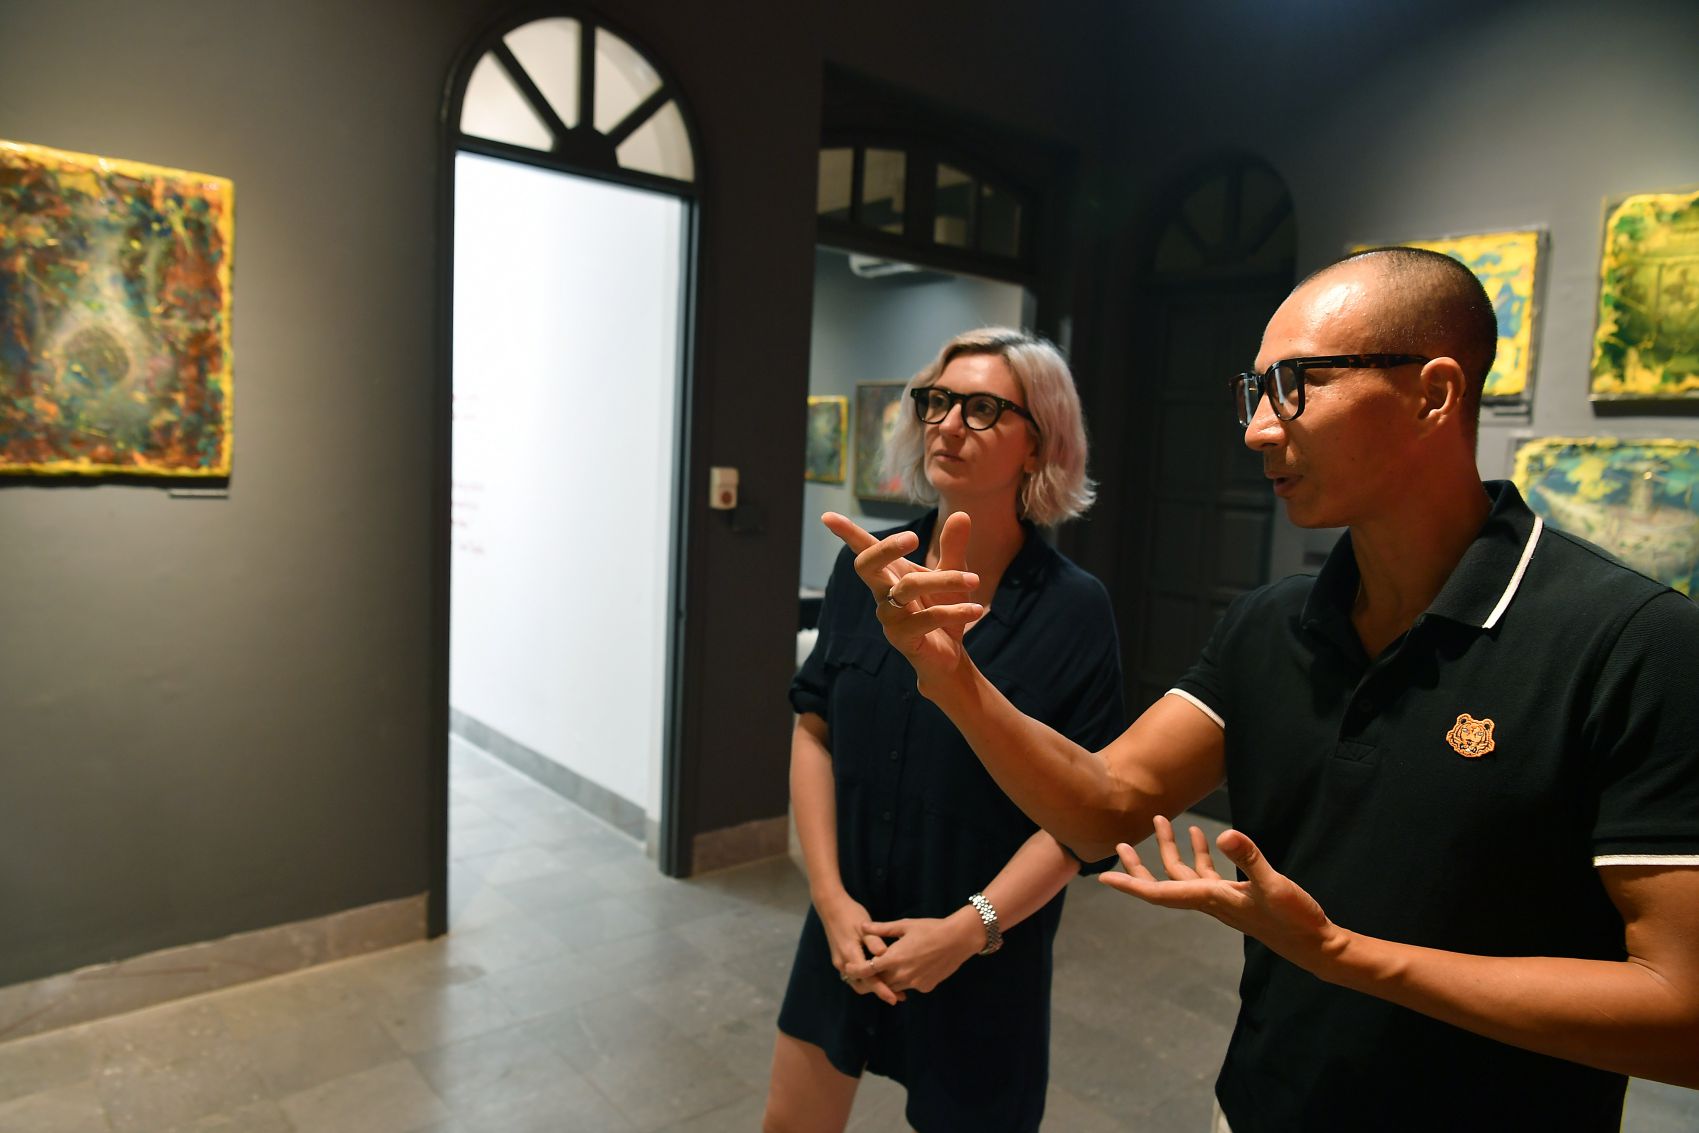 Chị Claire Driscoll là người sáng lập không gian nghệ thuật “Work room four” và họa sĩ Lưu Tuyền.